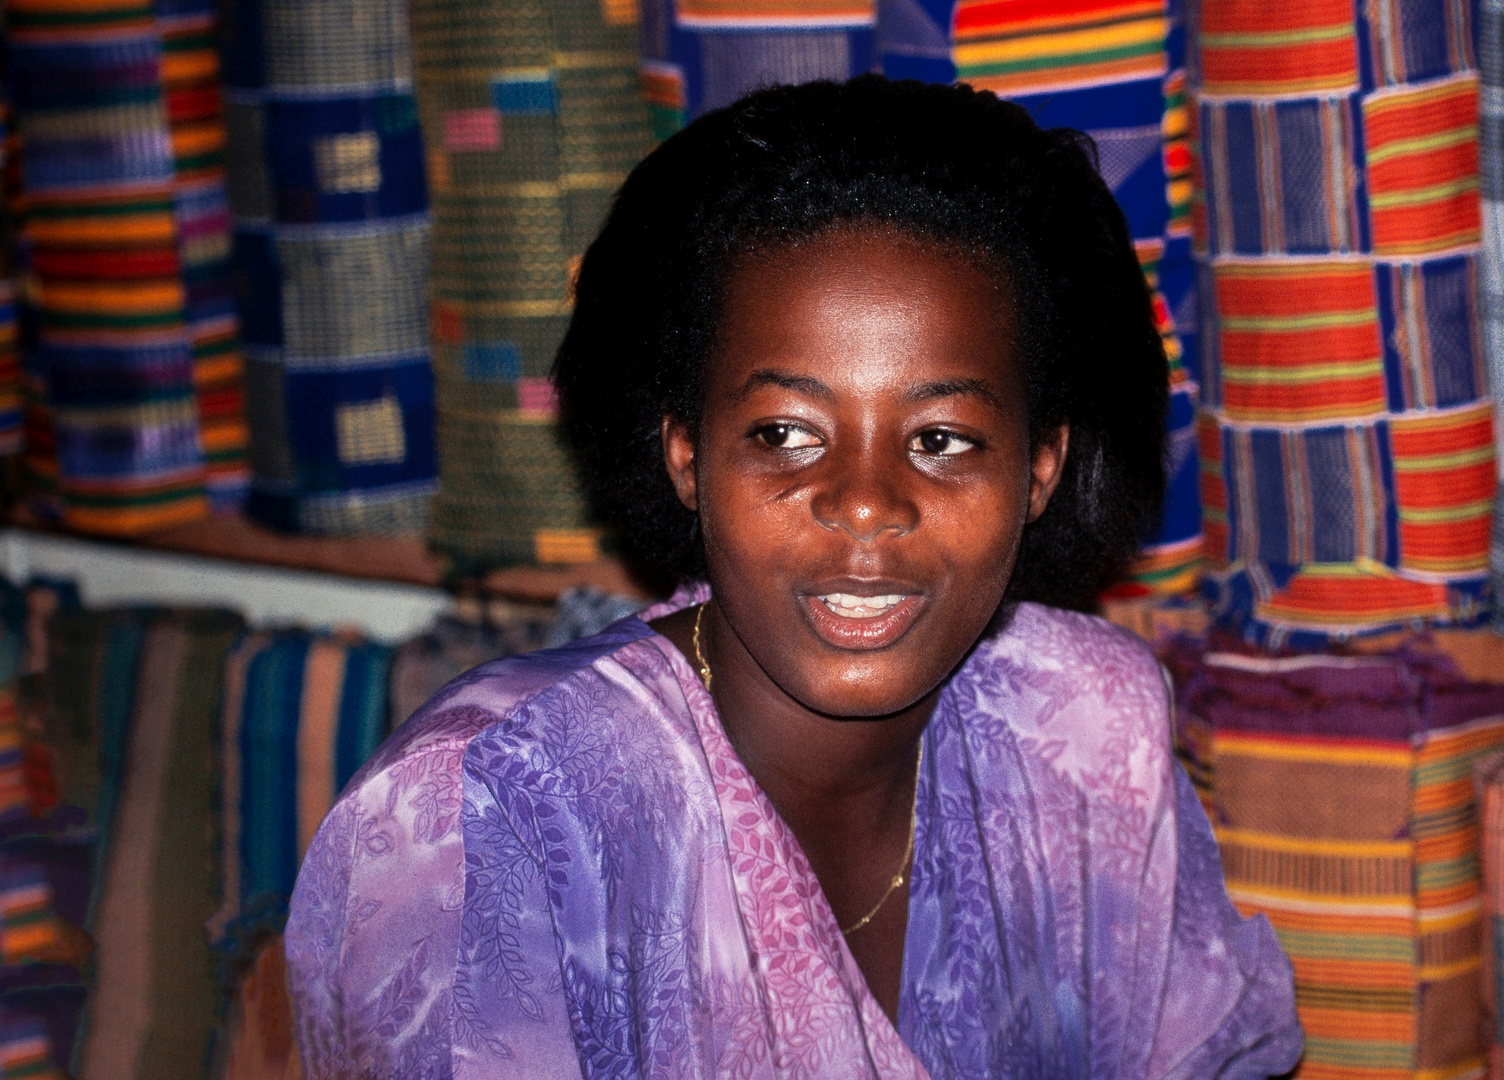 Tuchverkäuferin Abidjan Ivory Coast 1994